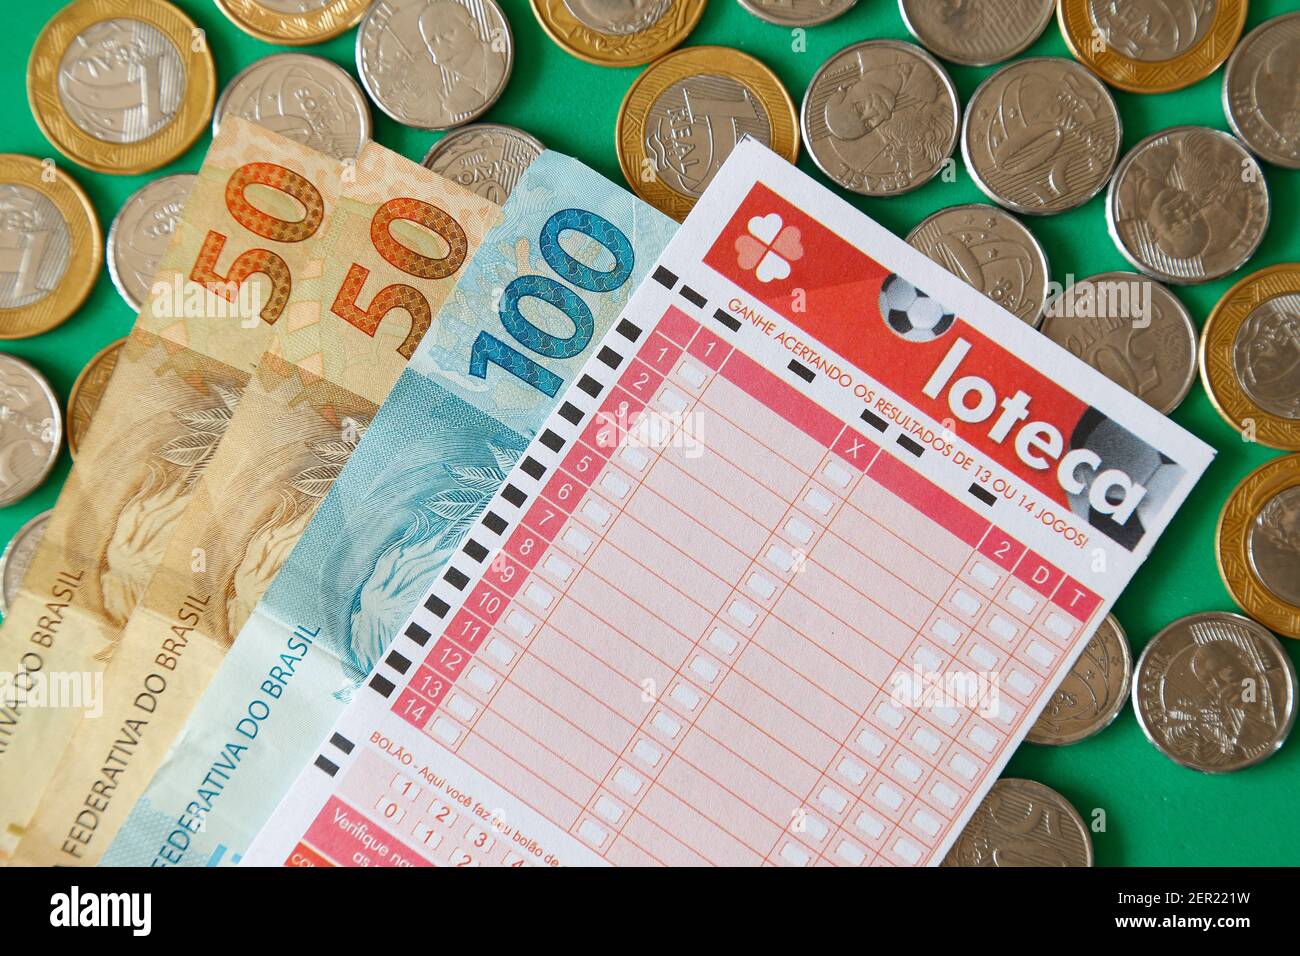 Minas Gerais, Brasile - 22 febbraio 2021: Banconote, monete e biglietto per lotteria Caixa Loteca Foto Stock